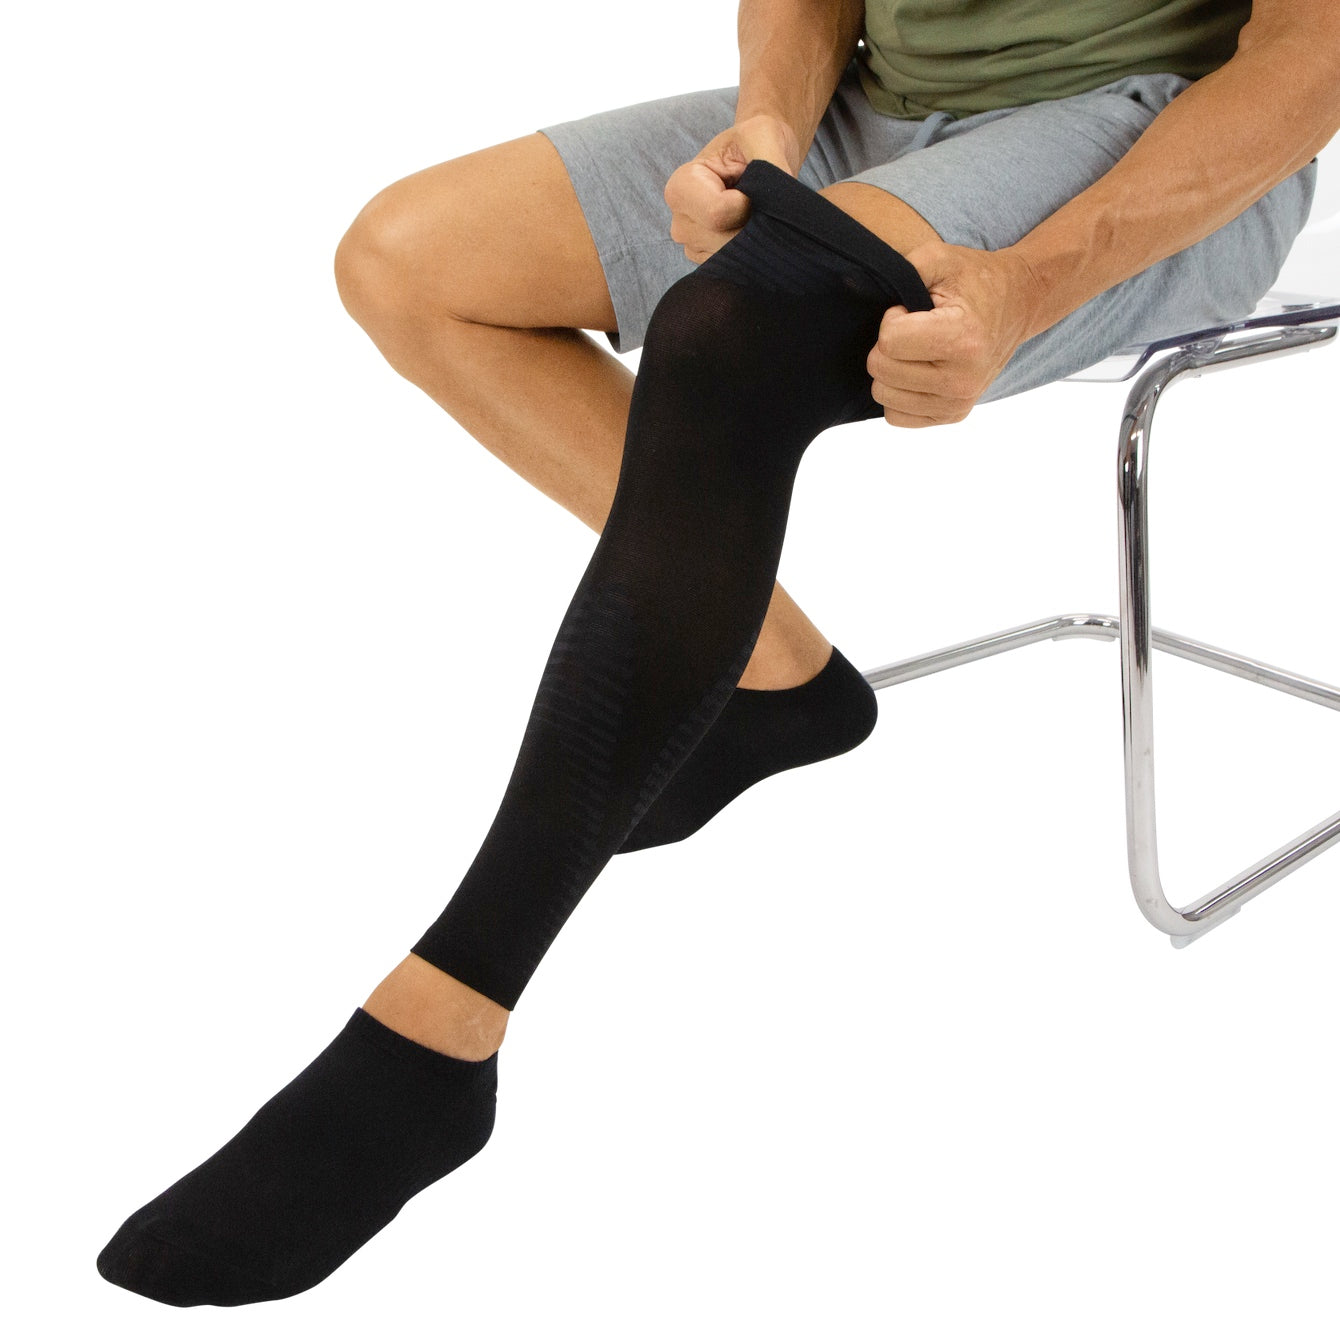 QUADA Calf Compression Sleeves for Men & Women - Calf Support Leg